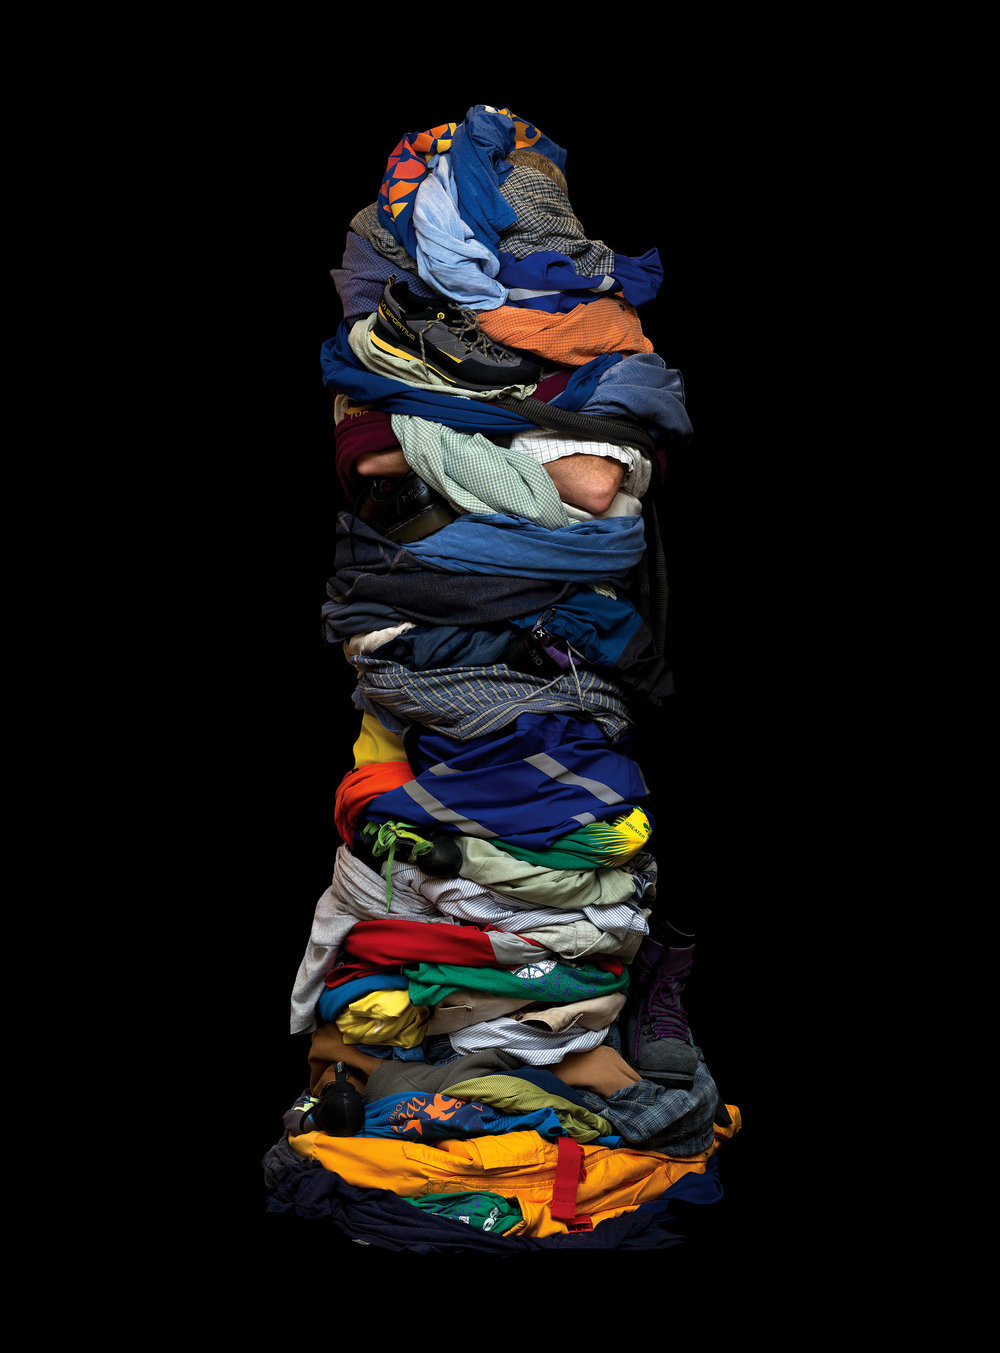 5 6 Jak wyglądałbyś, gdybyś założył swoje wszystkie ubrania na raz?